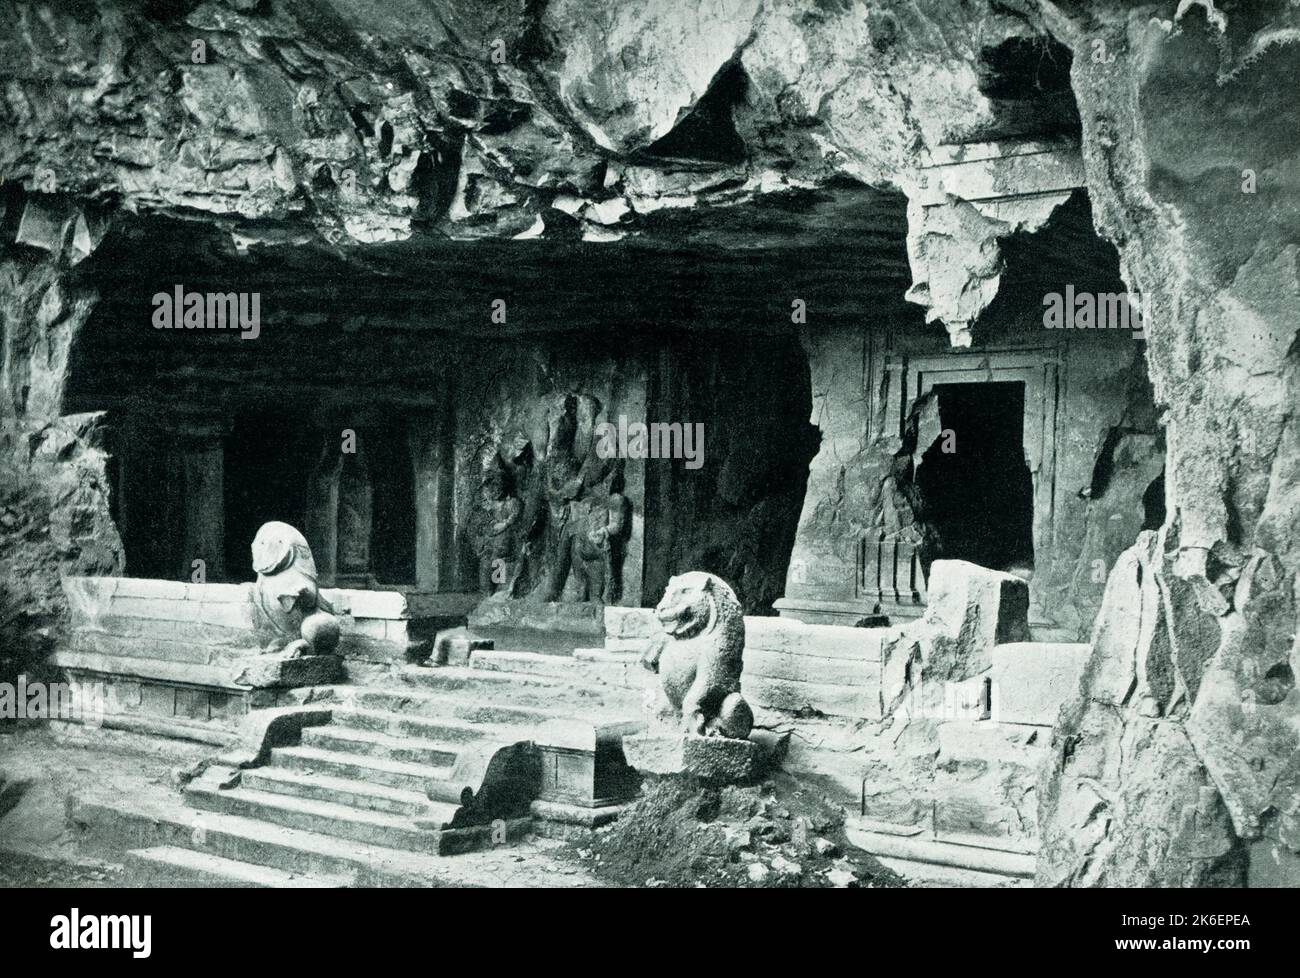 Die Bildunterschrift für dieses Bild von 1910 lautet: „Eingang zu einem der Grotto-Tempel auf der Insel Elephanta in Bombay [Indien]“. Elephanta Island, Hindi Gharapuri („Fortress City“), Insel im Hafen von Mumbai (Bombay) am Arabischen Meer, etwa 6 Meilen östlich von Mumbai. Die Grotte oder Höhlentempel sind meist dem Hindu-gott Shiva gewidmet. Stockfoto